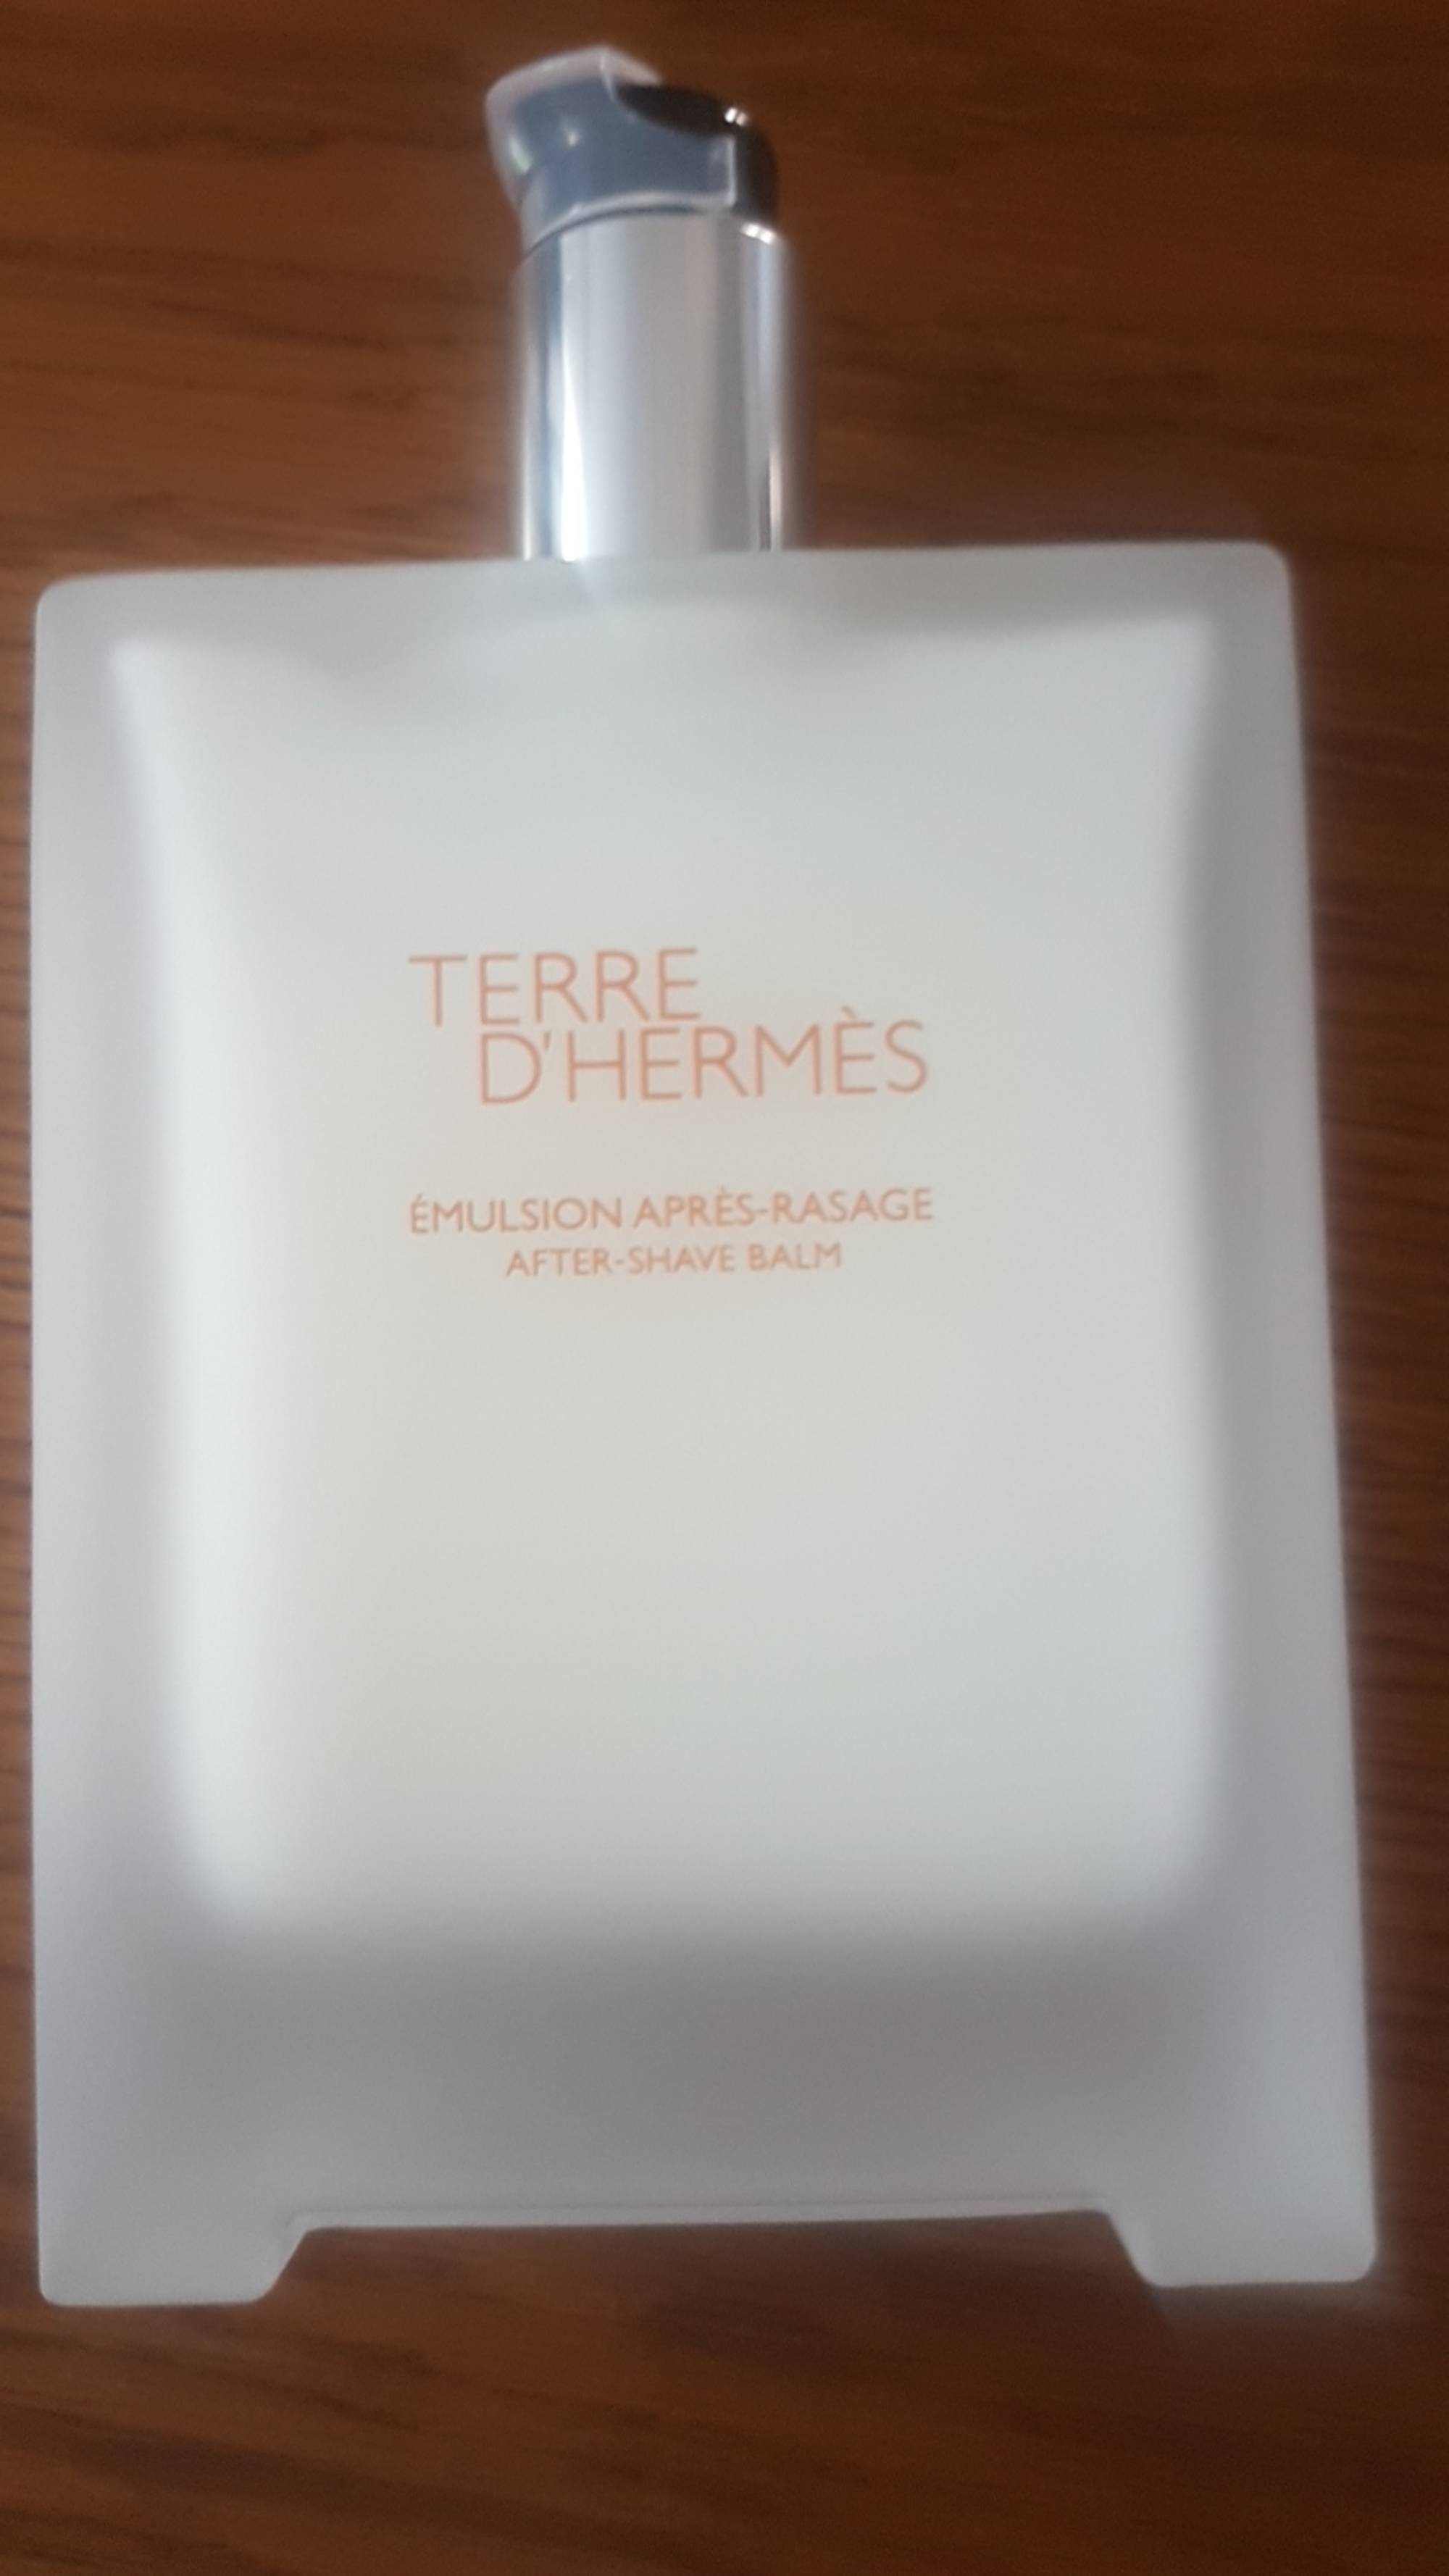 TERRE D'HERMÈS - Emulsion après-rasage